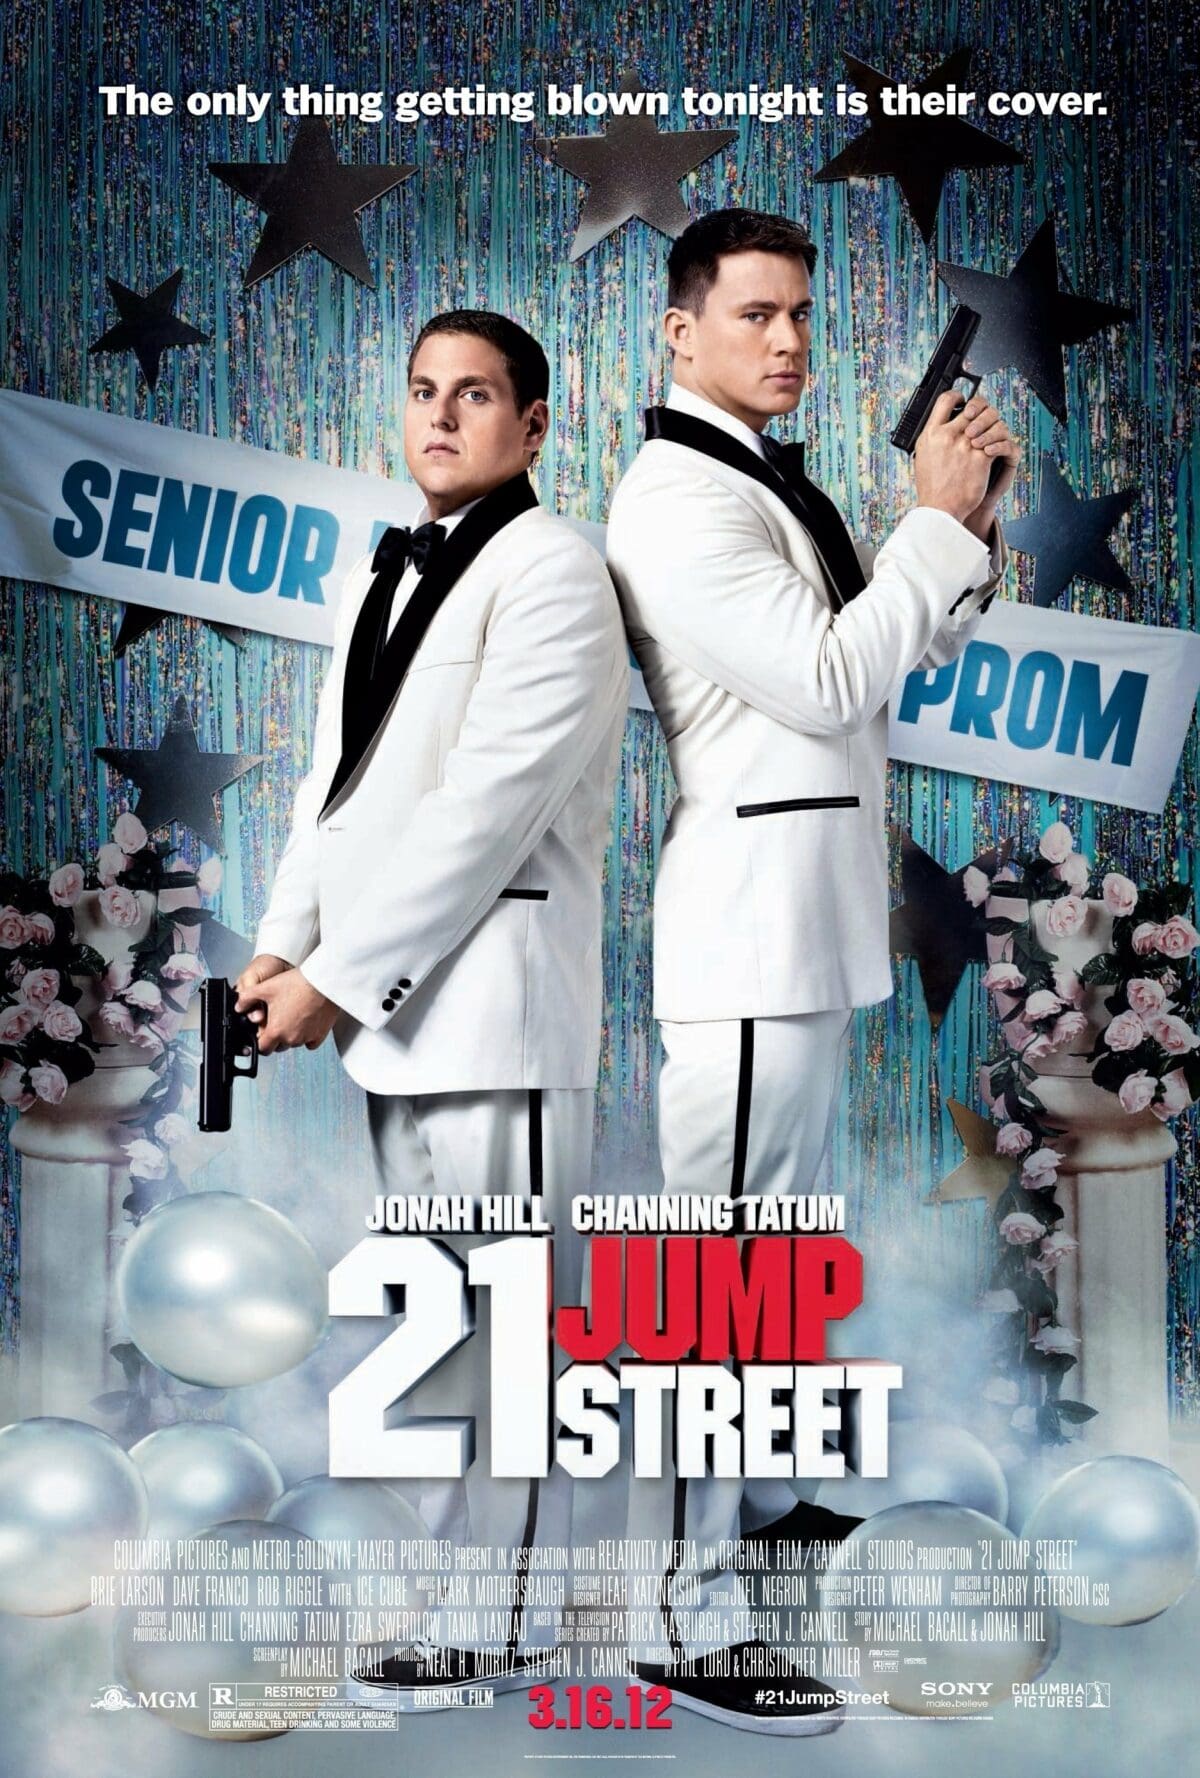 Movies Like Superbad: 21 Jump Street